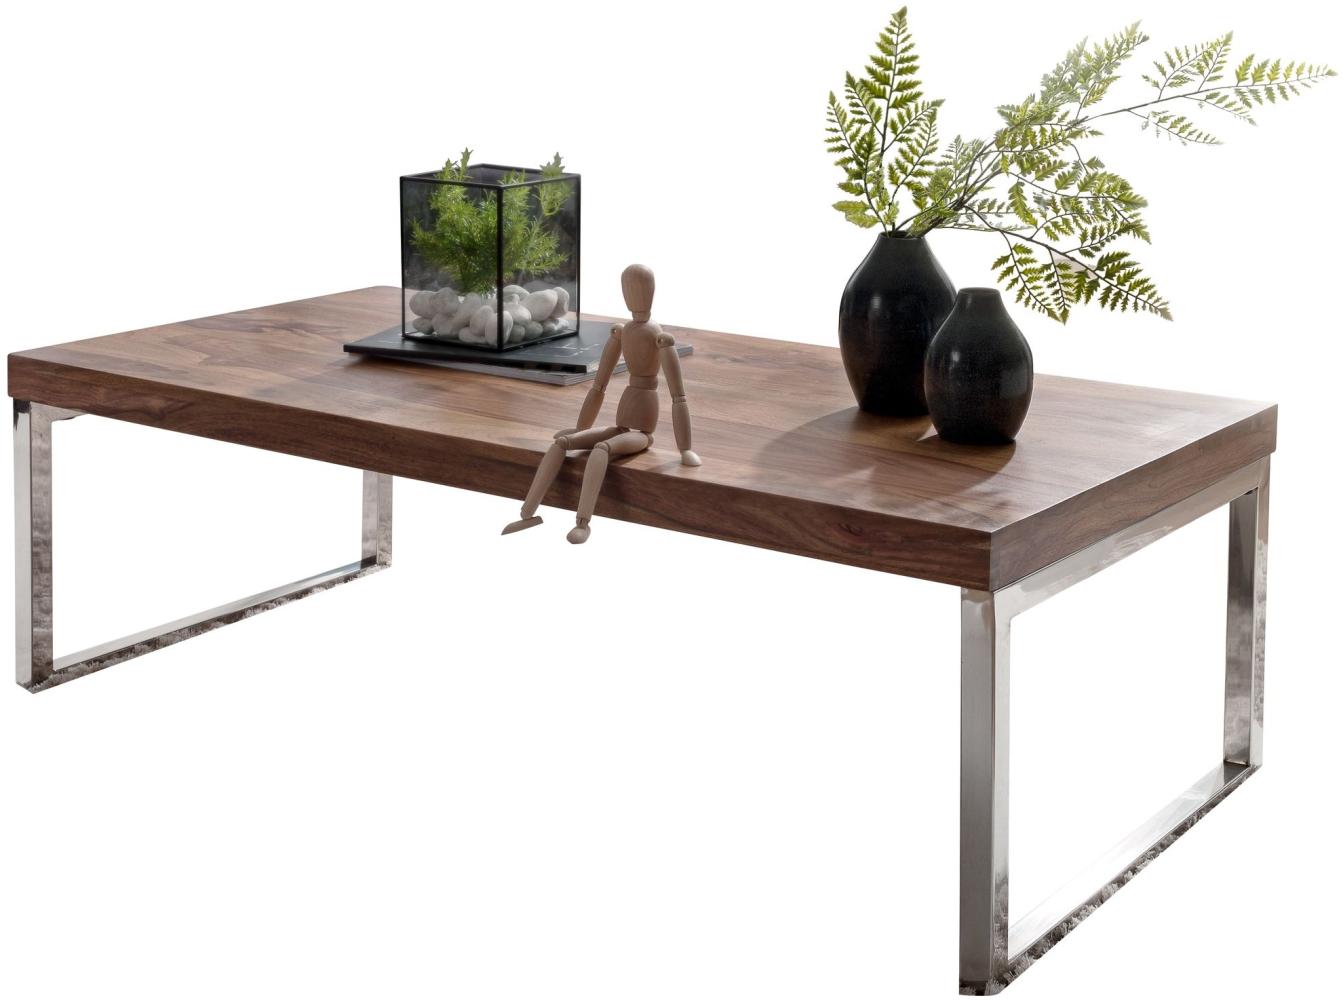 Wohnling Couchtisch 120 x 60 x 40 cm Massiv Holz Tisch | Massiver Design Wohnzimmertisch aus Massivholz, Sheesham Bild 1